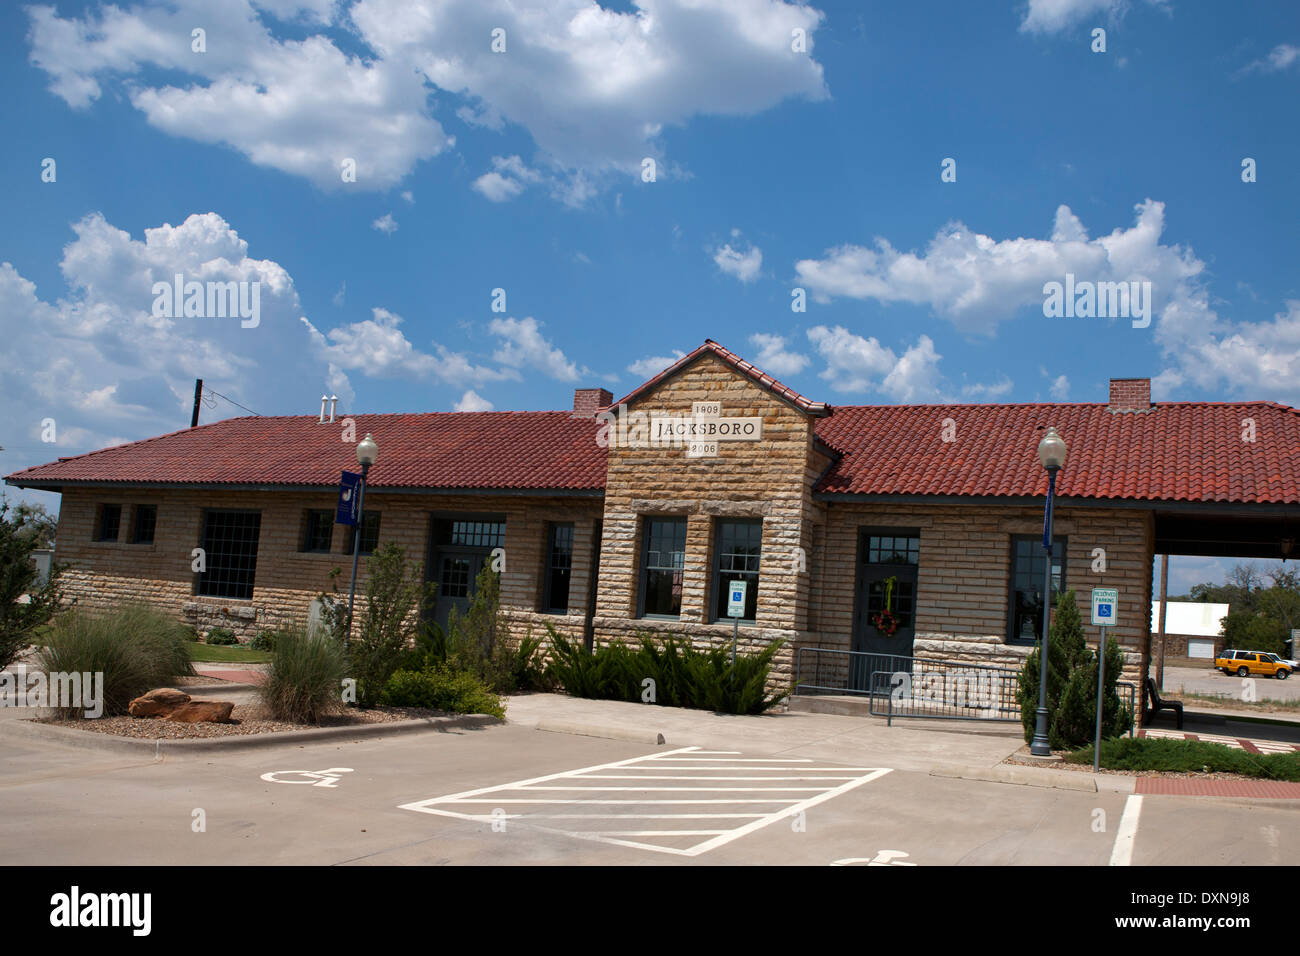 Centre de visiteurs, Ponca City, Texas, United States of America Banque D'Images